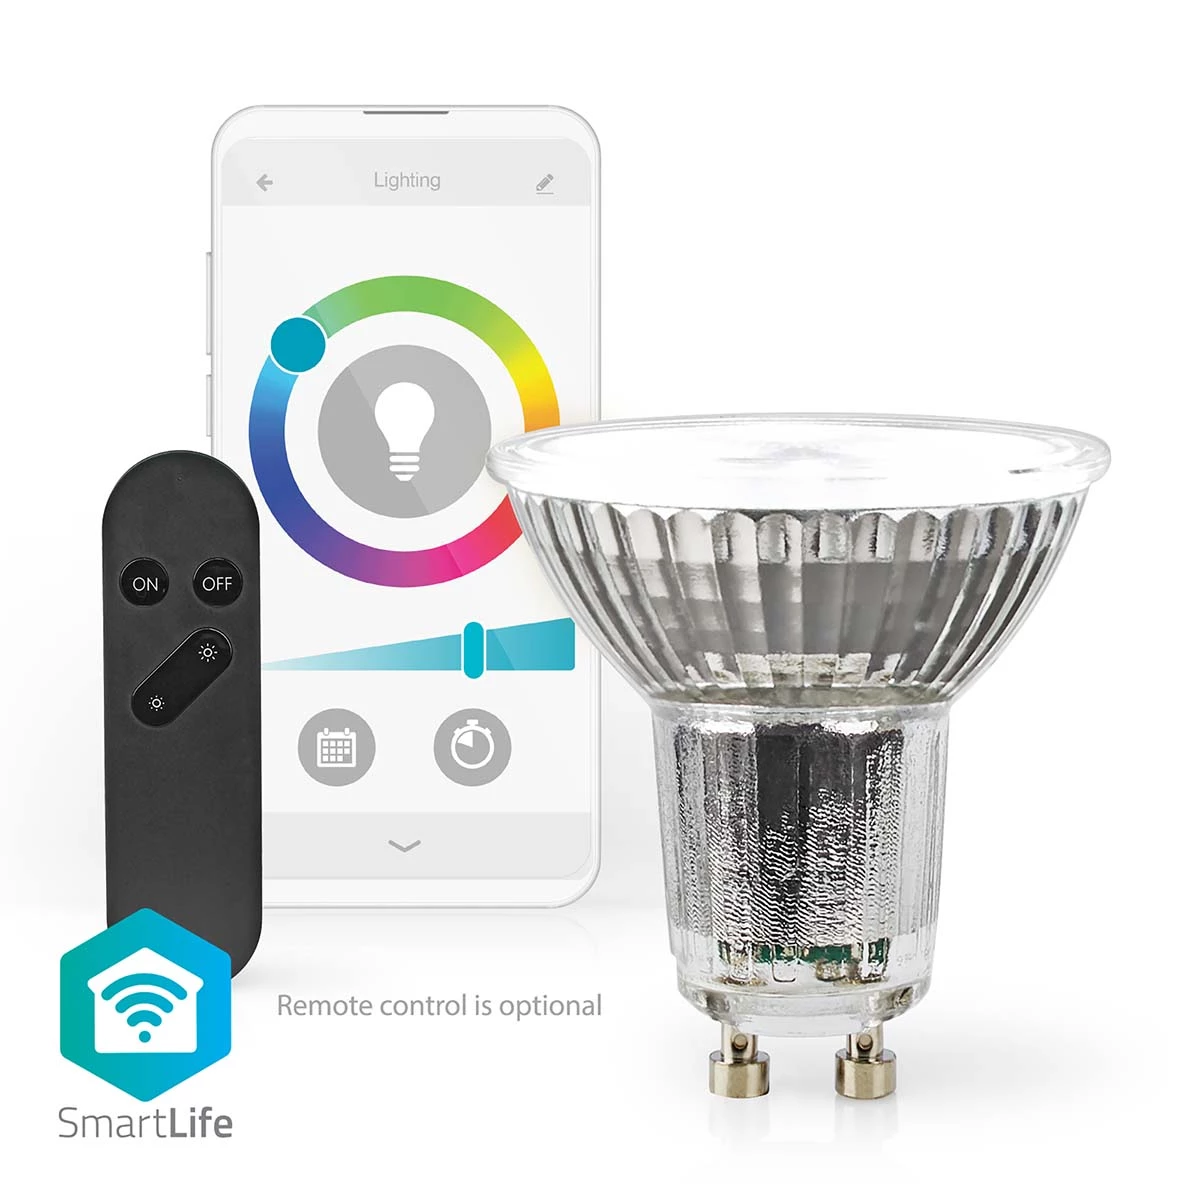 SmartLife LED-Spot